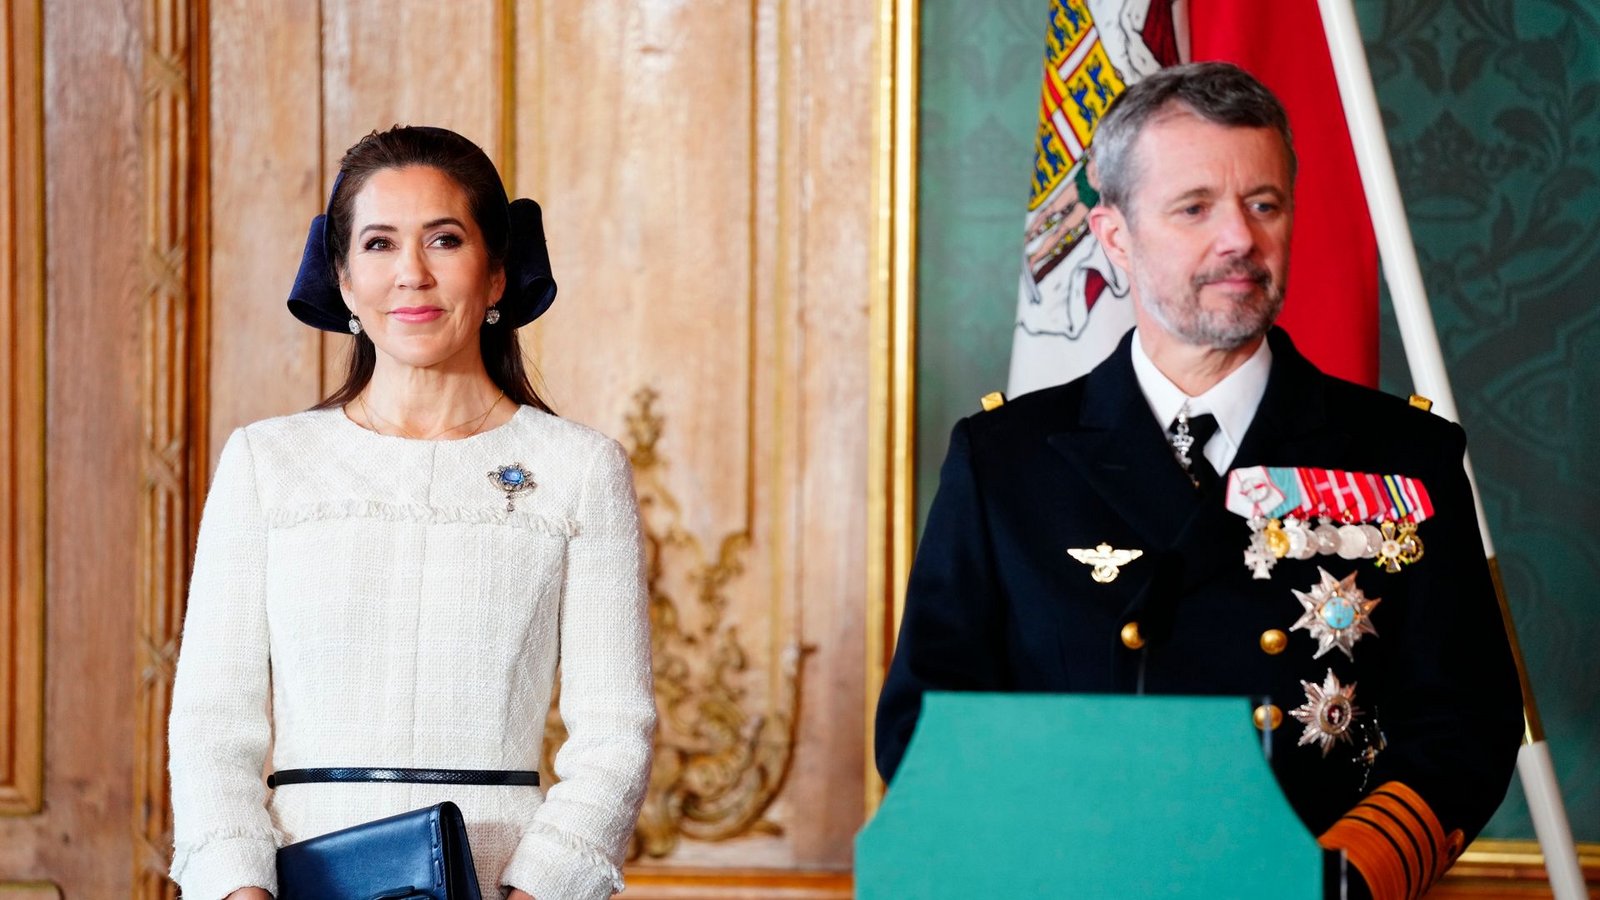 Dänemarks König Frederik X. und Königin Mary beim Besuch in Schweden.Foto: Ida Marie Odgaard/Ritzau Scanpix Foto/AP/dpa